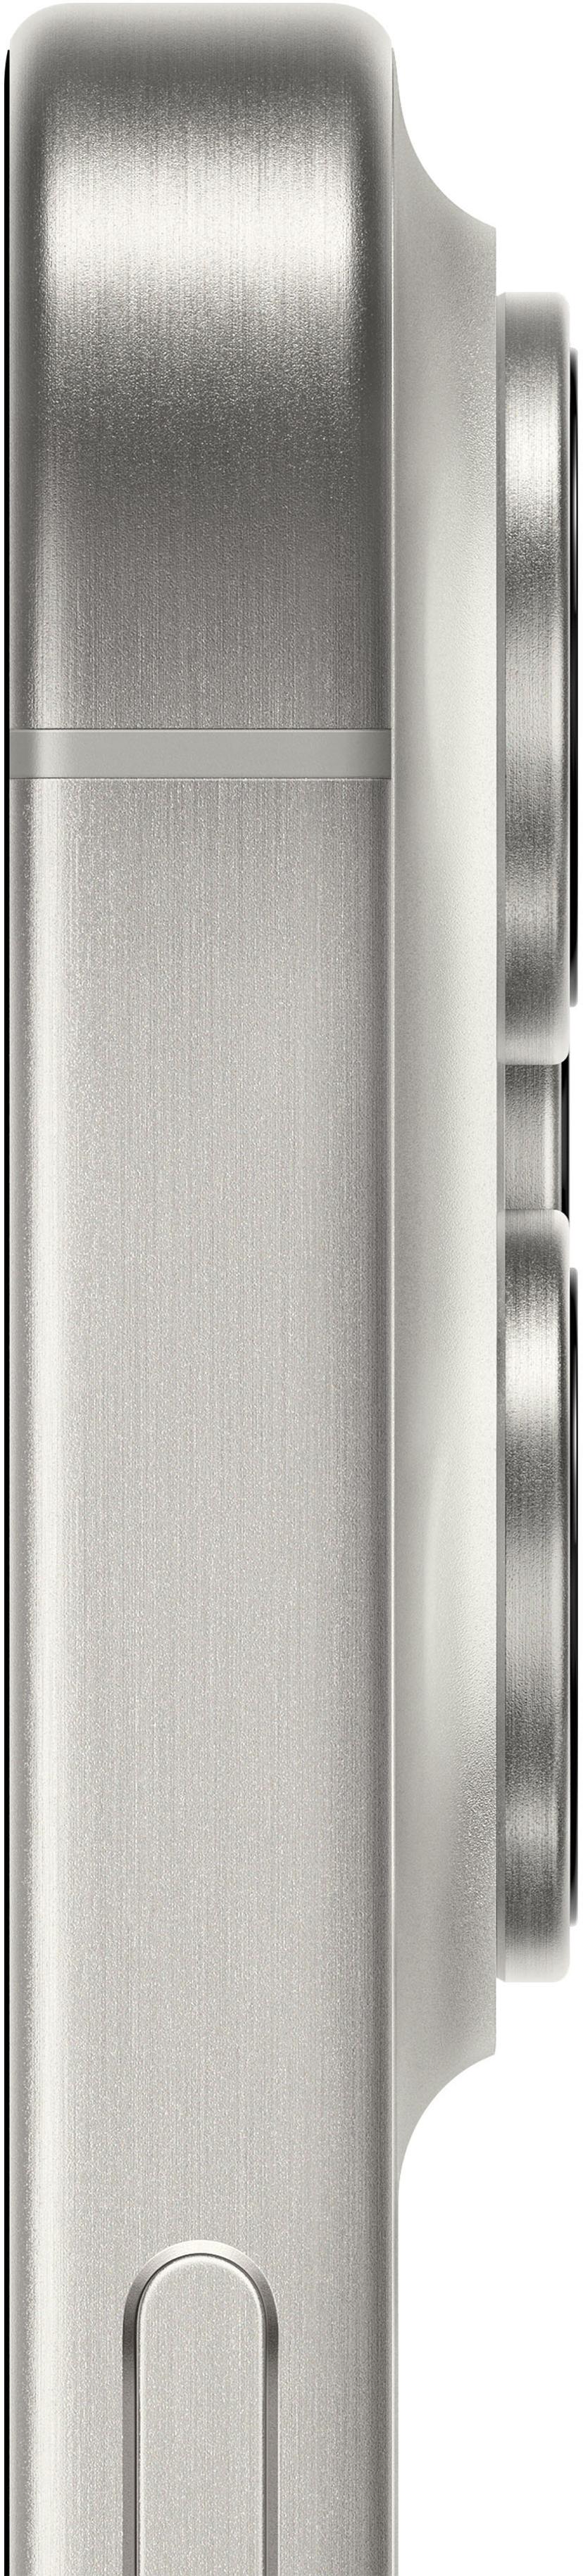 Apple iPhone 15 Pro Max 256GB Titaani, Valkoinen